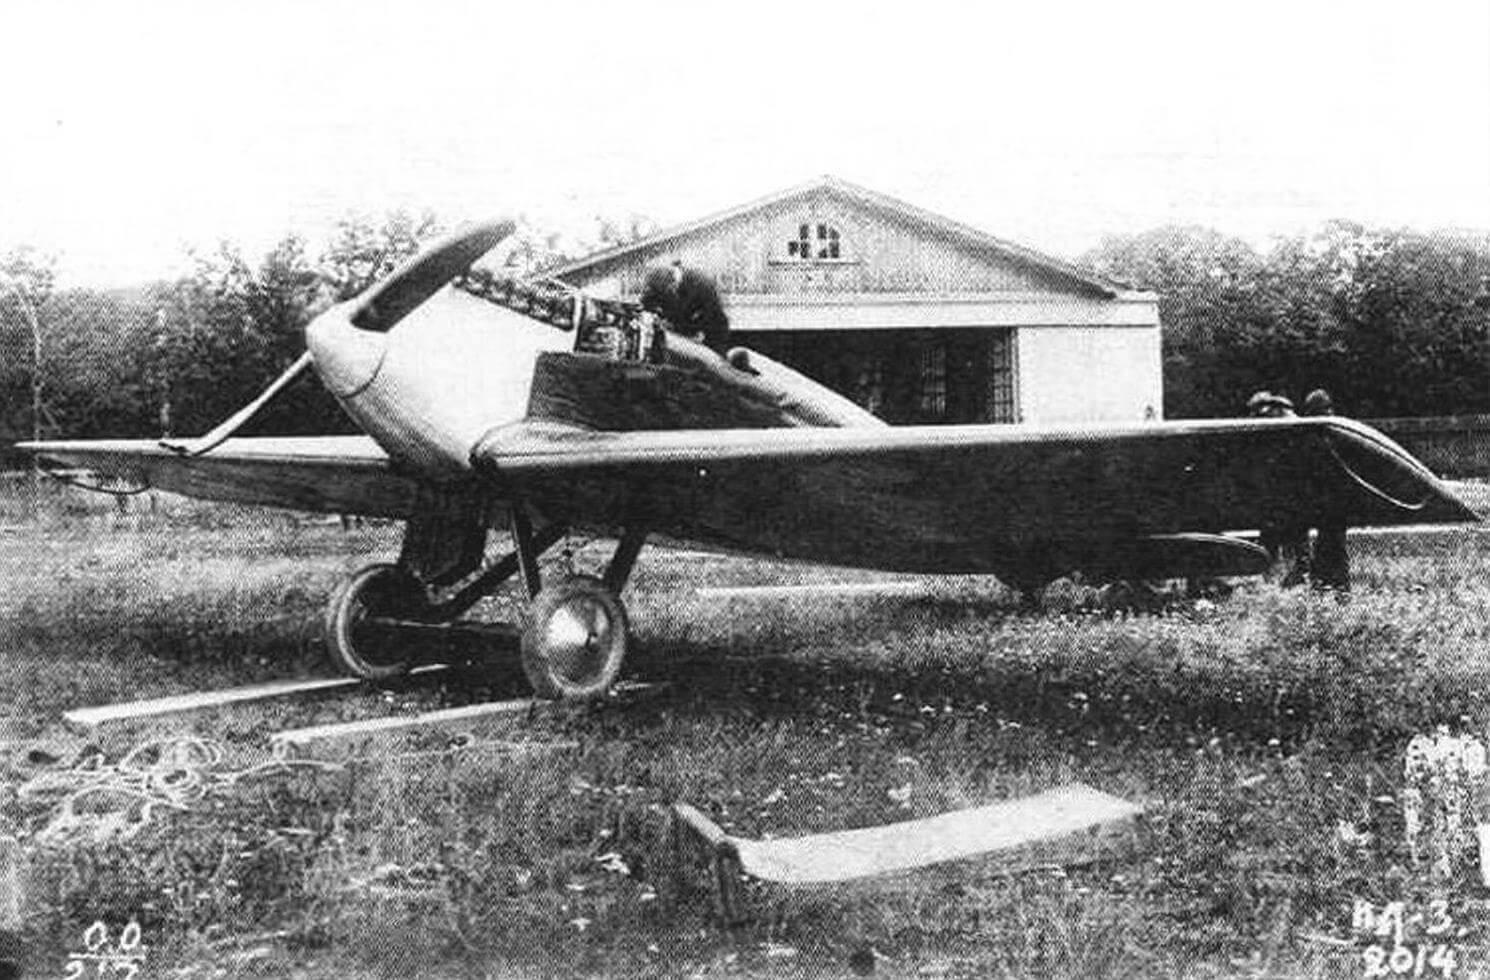 Третий опытный экземпляр ИЛ-400 позднее получил обозначение ИЛ-3 и стал образцом для небольшой серии, состоящей из 12 однотипных экземпляров. Самолет сфотографирован летом 1925 года перед ангаром, на котором написано: «Госуд. Авиационный завод Моска. Отдел испытаний самолетов».